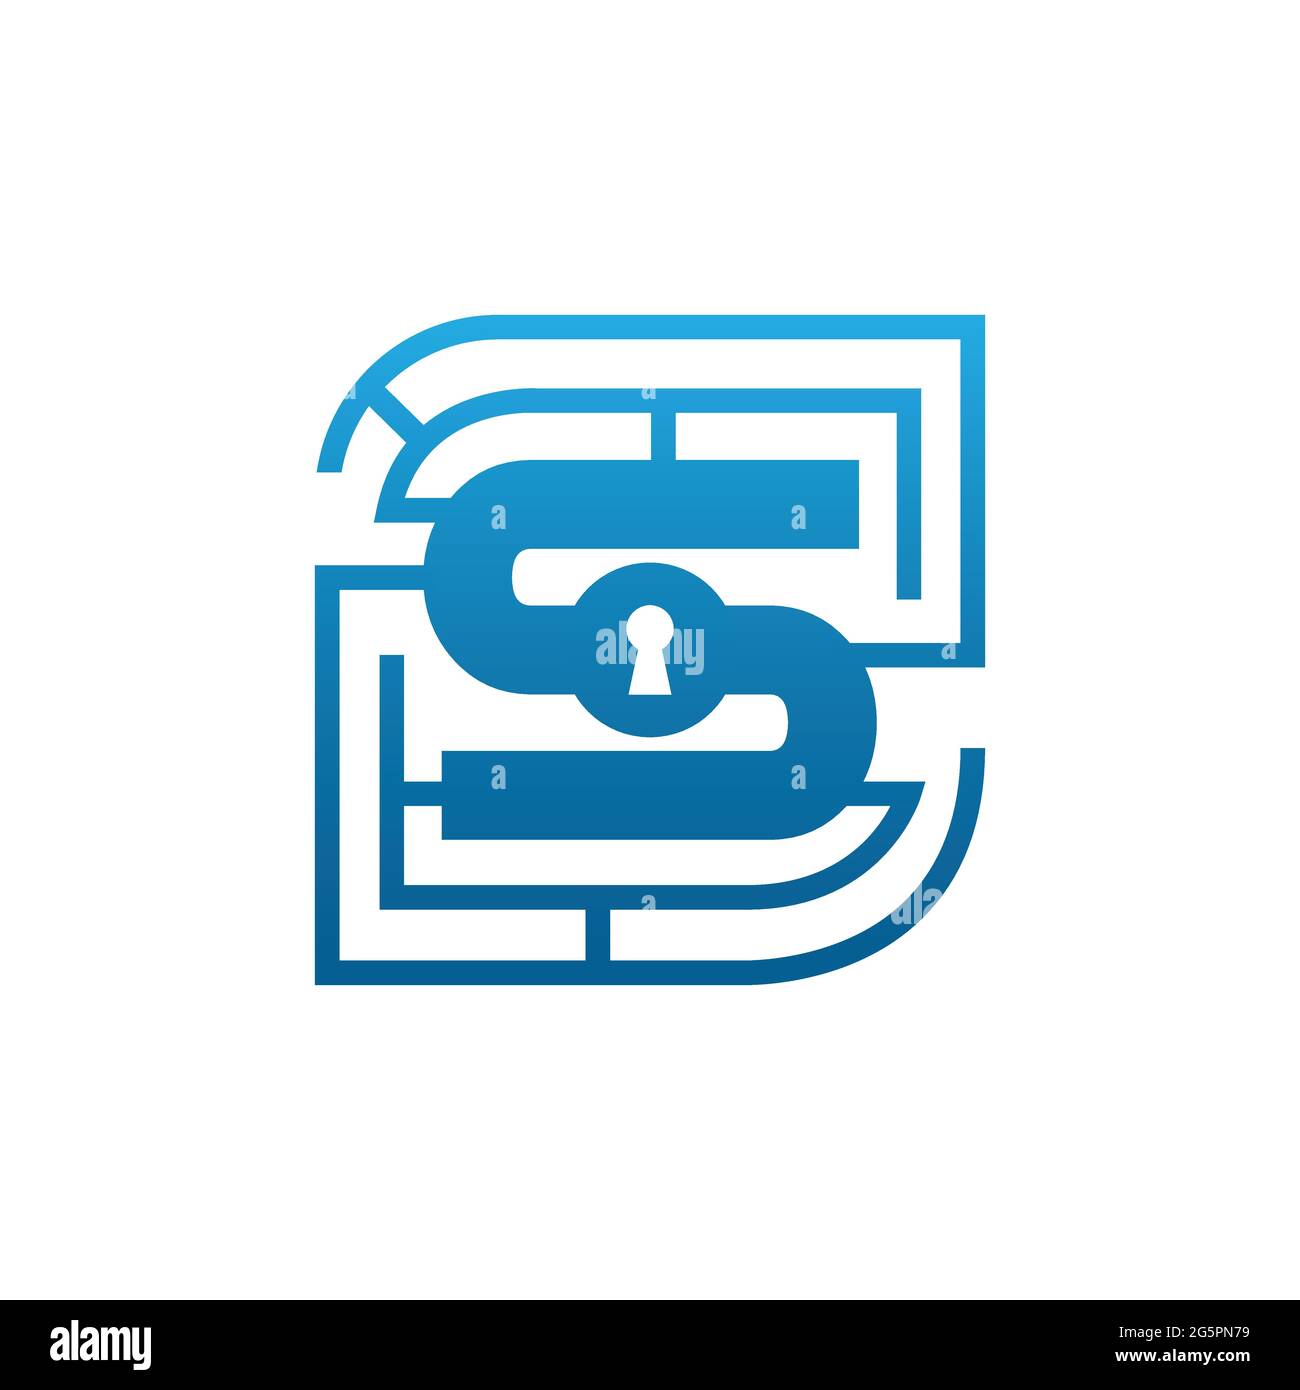 Vorlage für das Design des S-Sicherheitslogos mit Anfangsbuchstaben. Modernes Logo von kreativem Brief s Sicherheitstechnologie-System. Buchstabe S Sicherheit Labyrinth Logo Stock Vektor